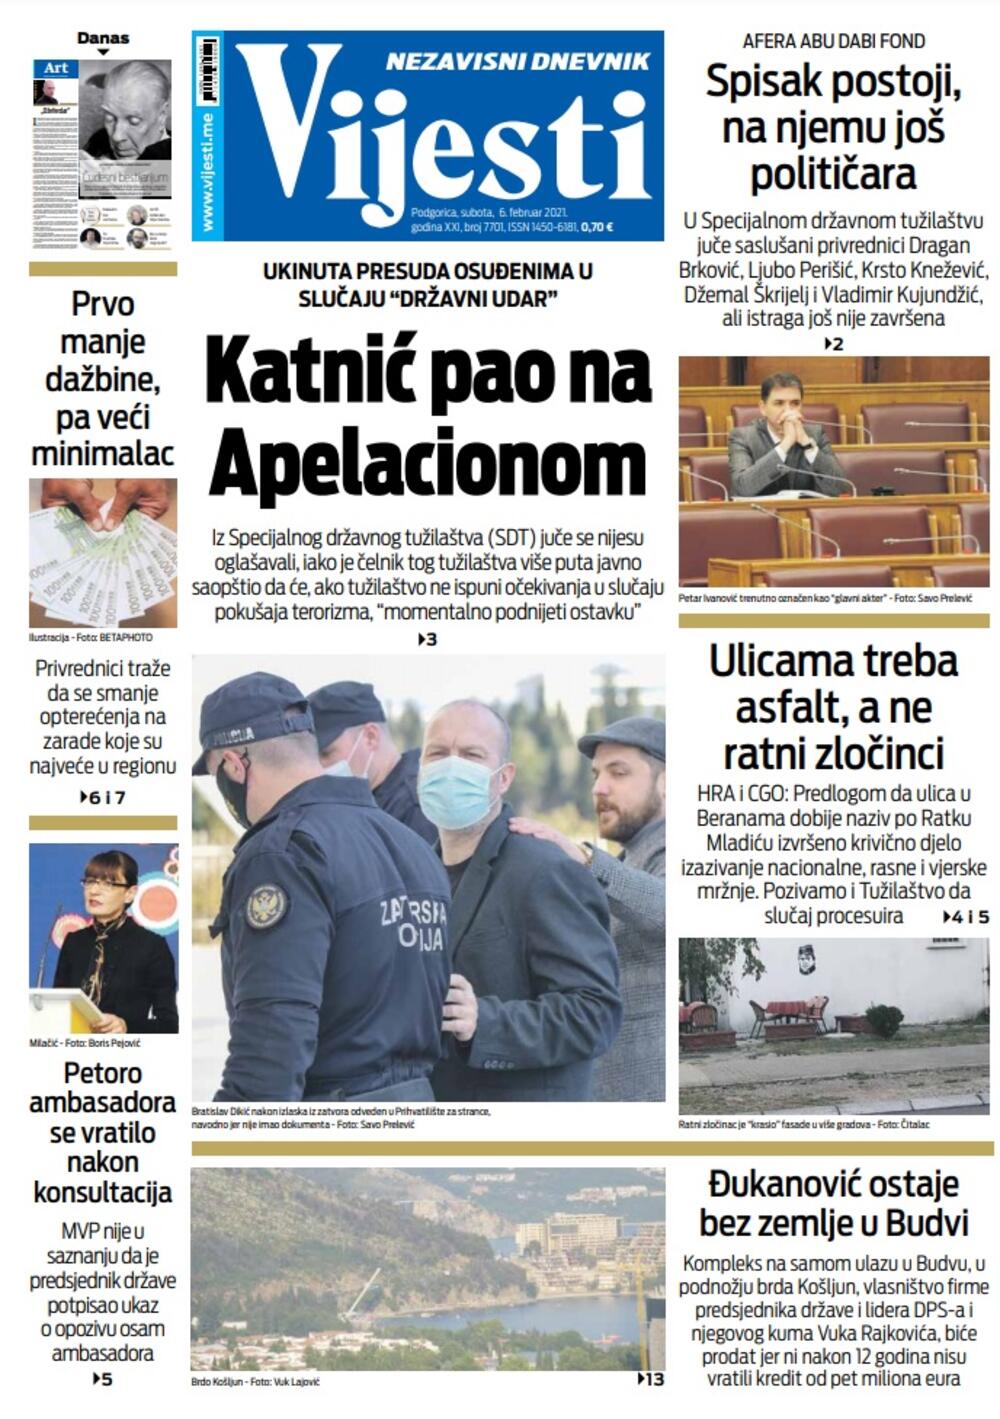 Naslovna strana "Vijesti" za subotu 6. februar 2021. godine, Foto: Vijesti